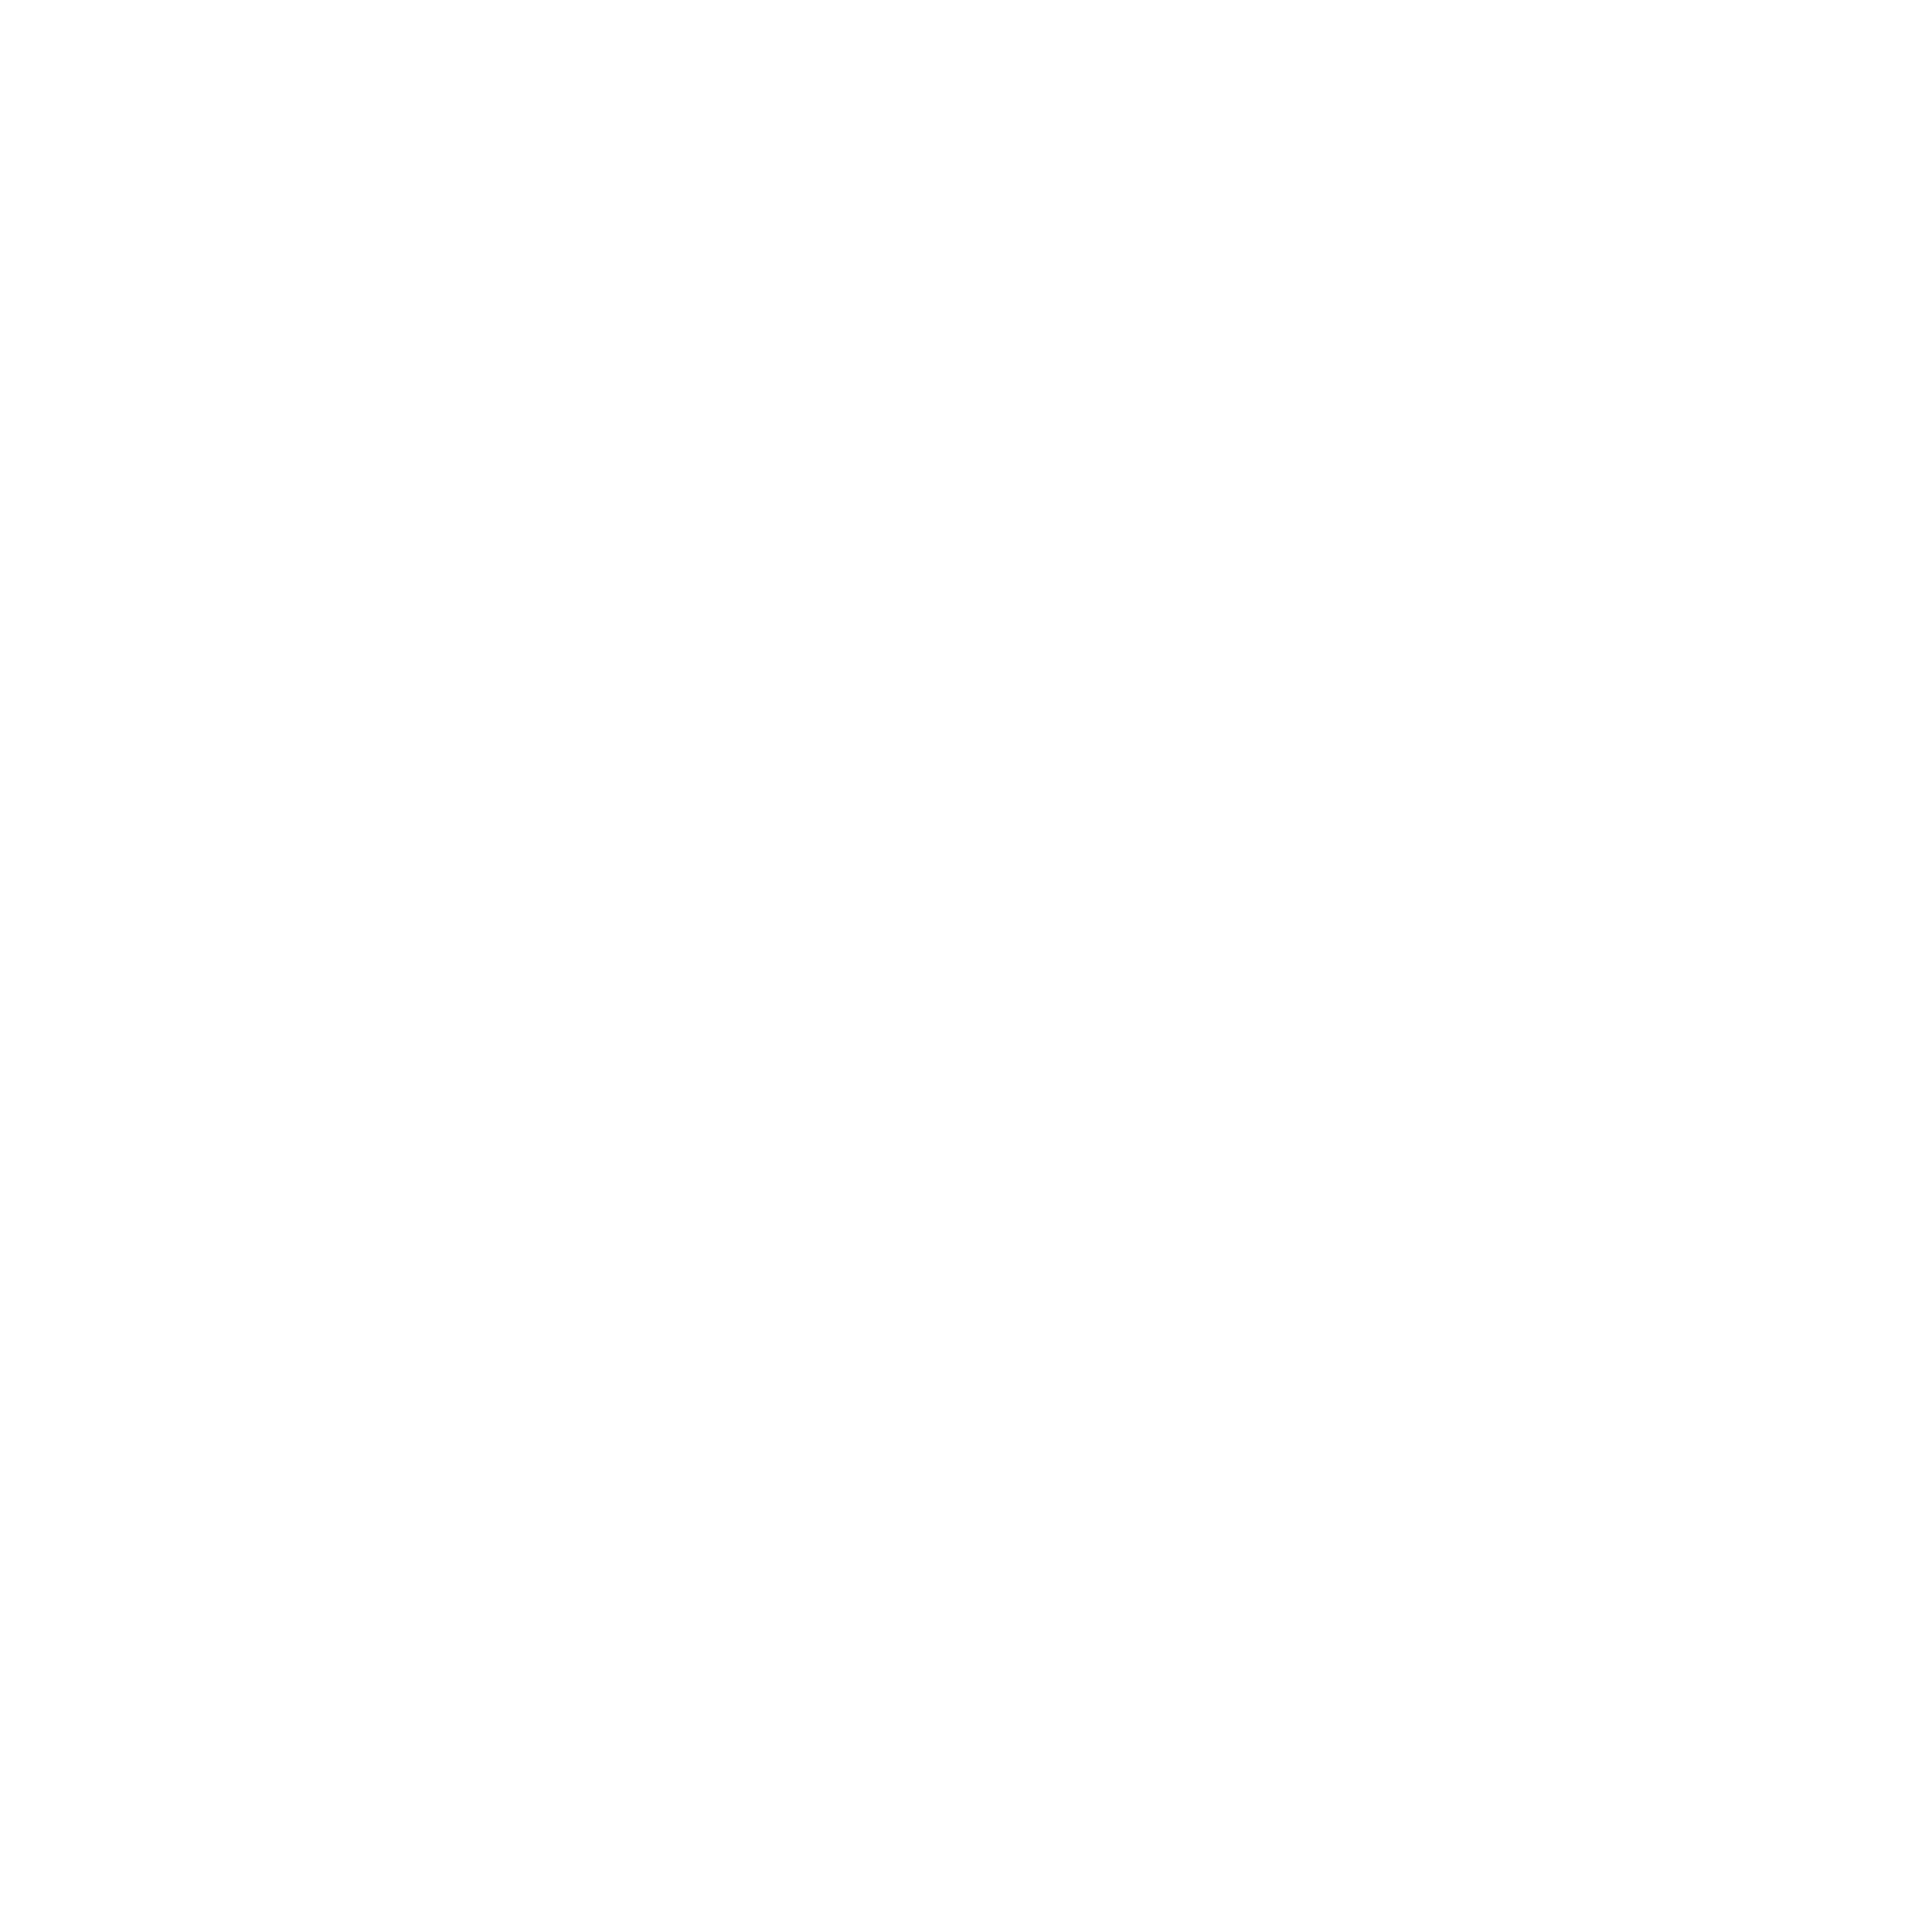 Little Runaway Retail Design Architects